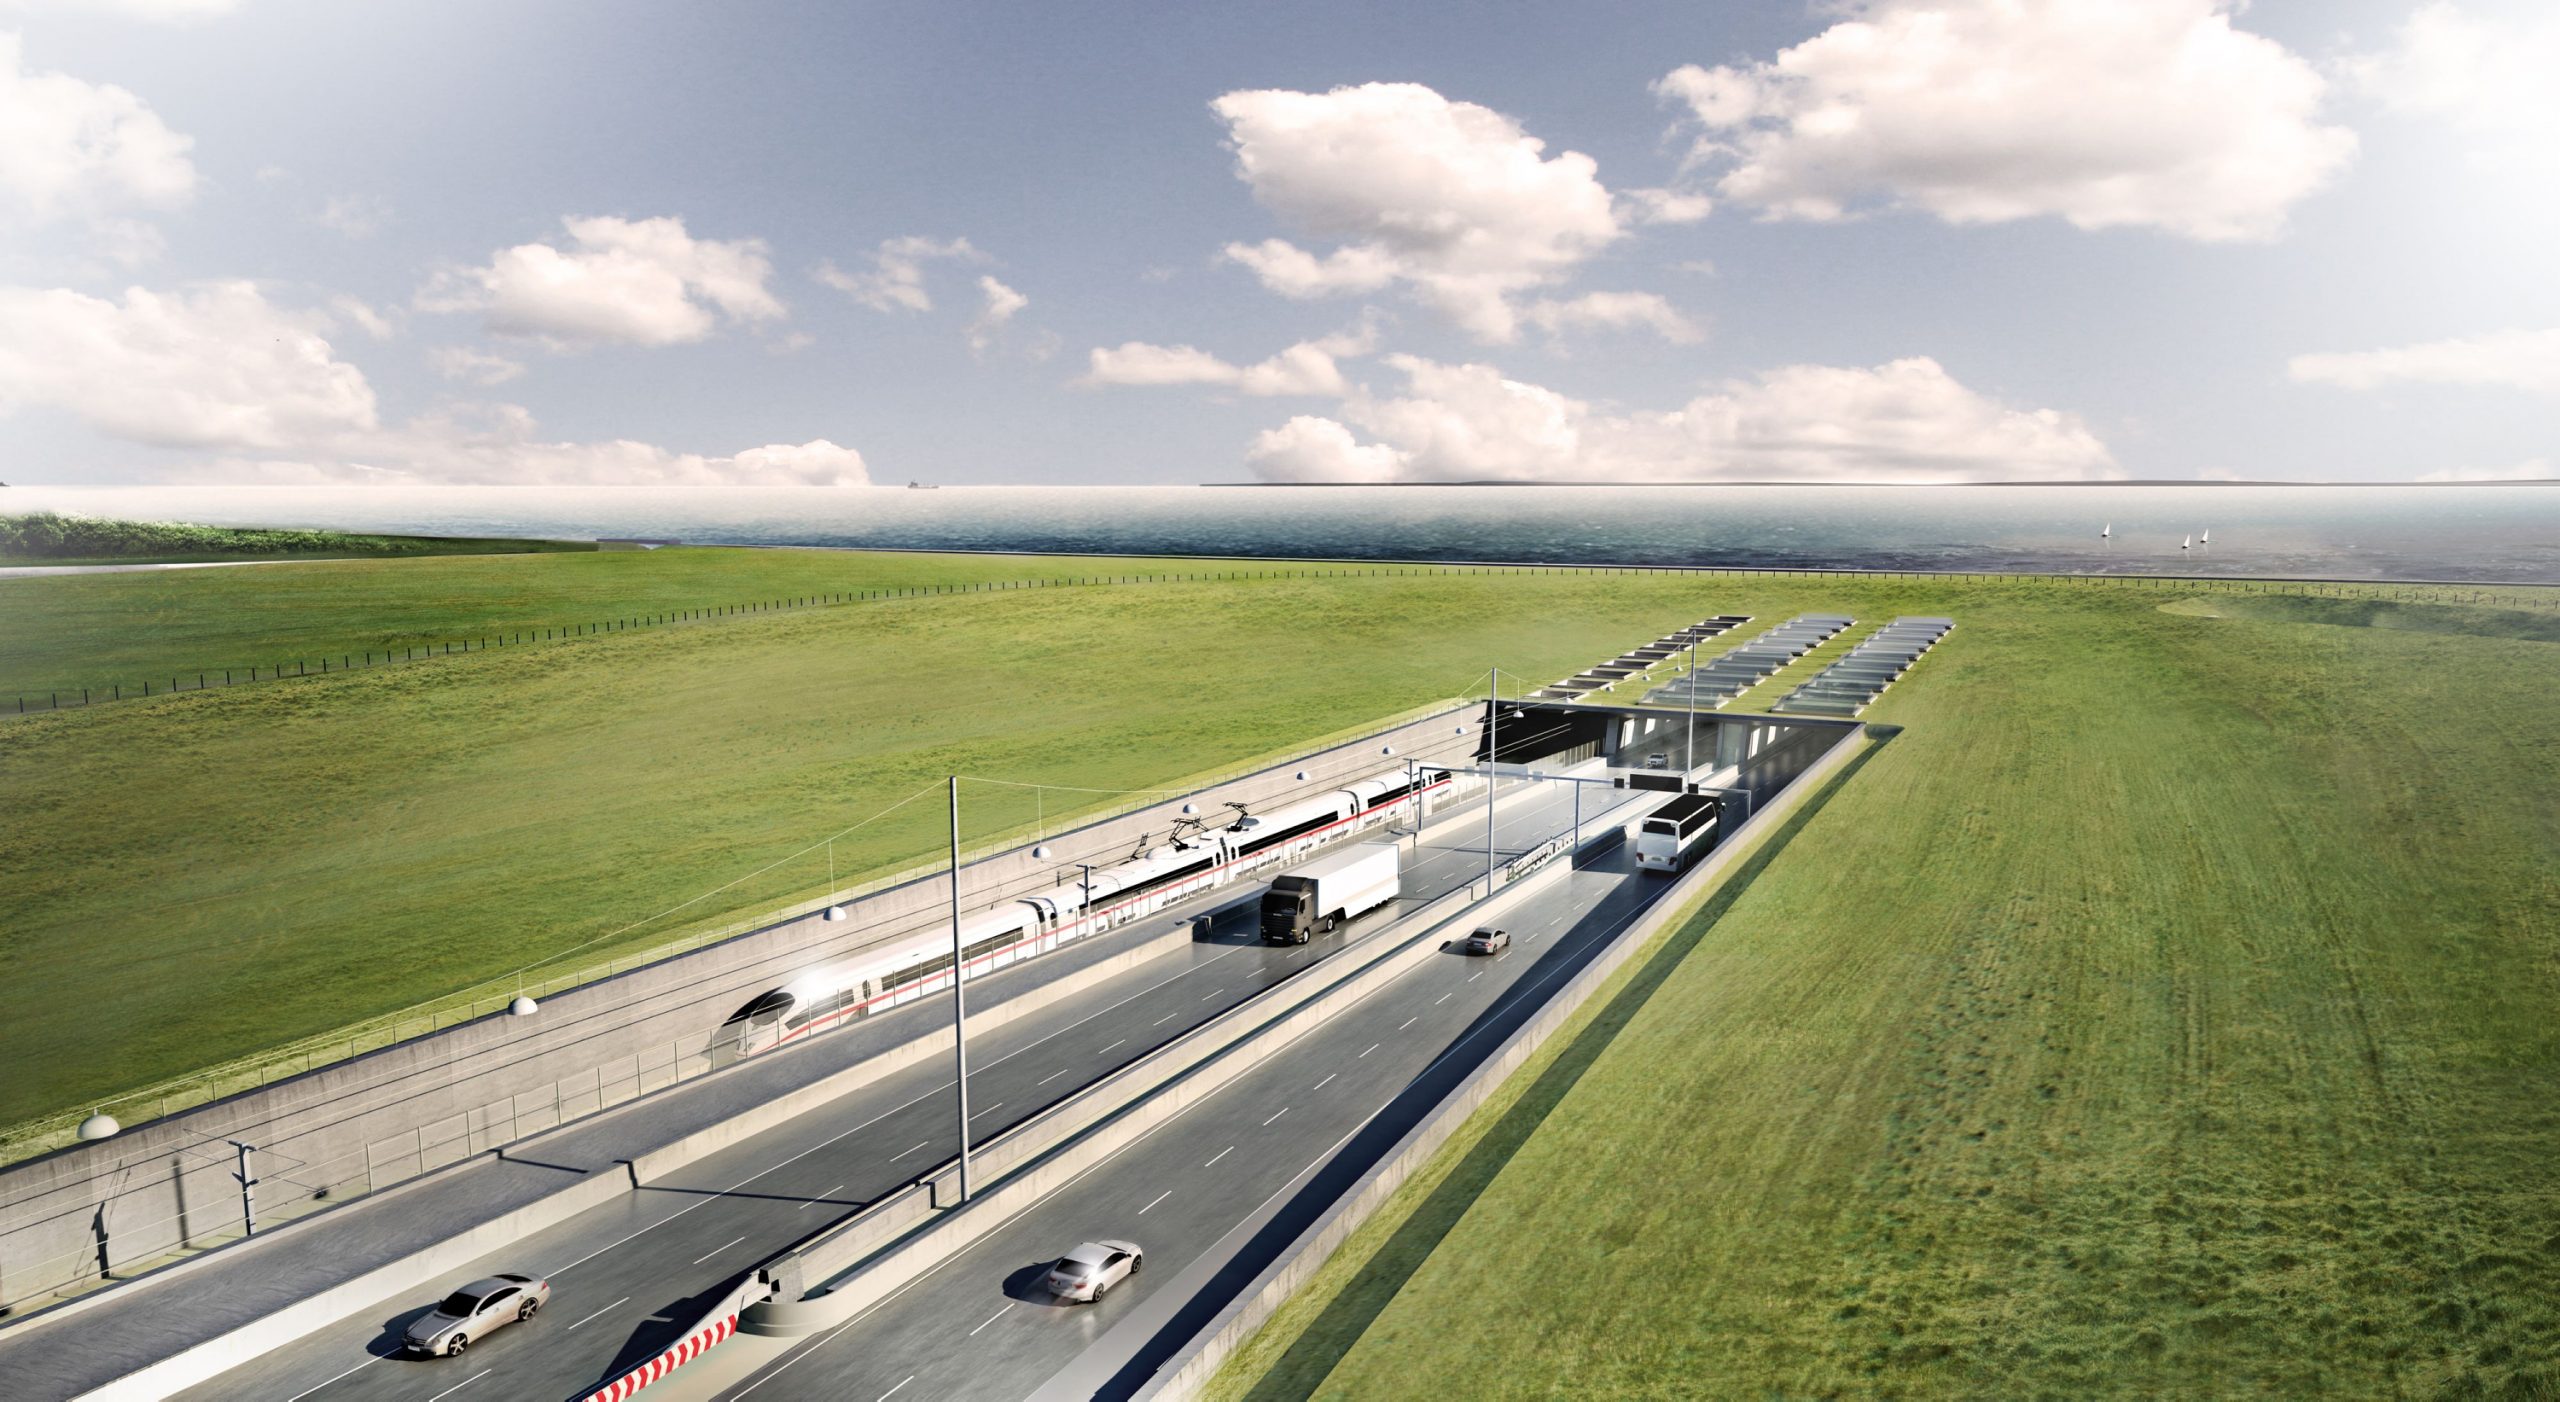 Dänemark, Rodbyhavn: Eine Visualisierung des geplanten Fehmarnbelt-Tunnels zwischen Deutschland und Dänemark mit dem Tunneleingang auf dänischer Seite bei Rodbyhavn.